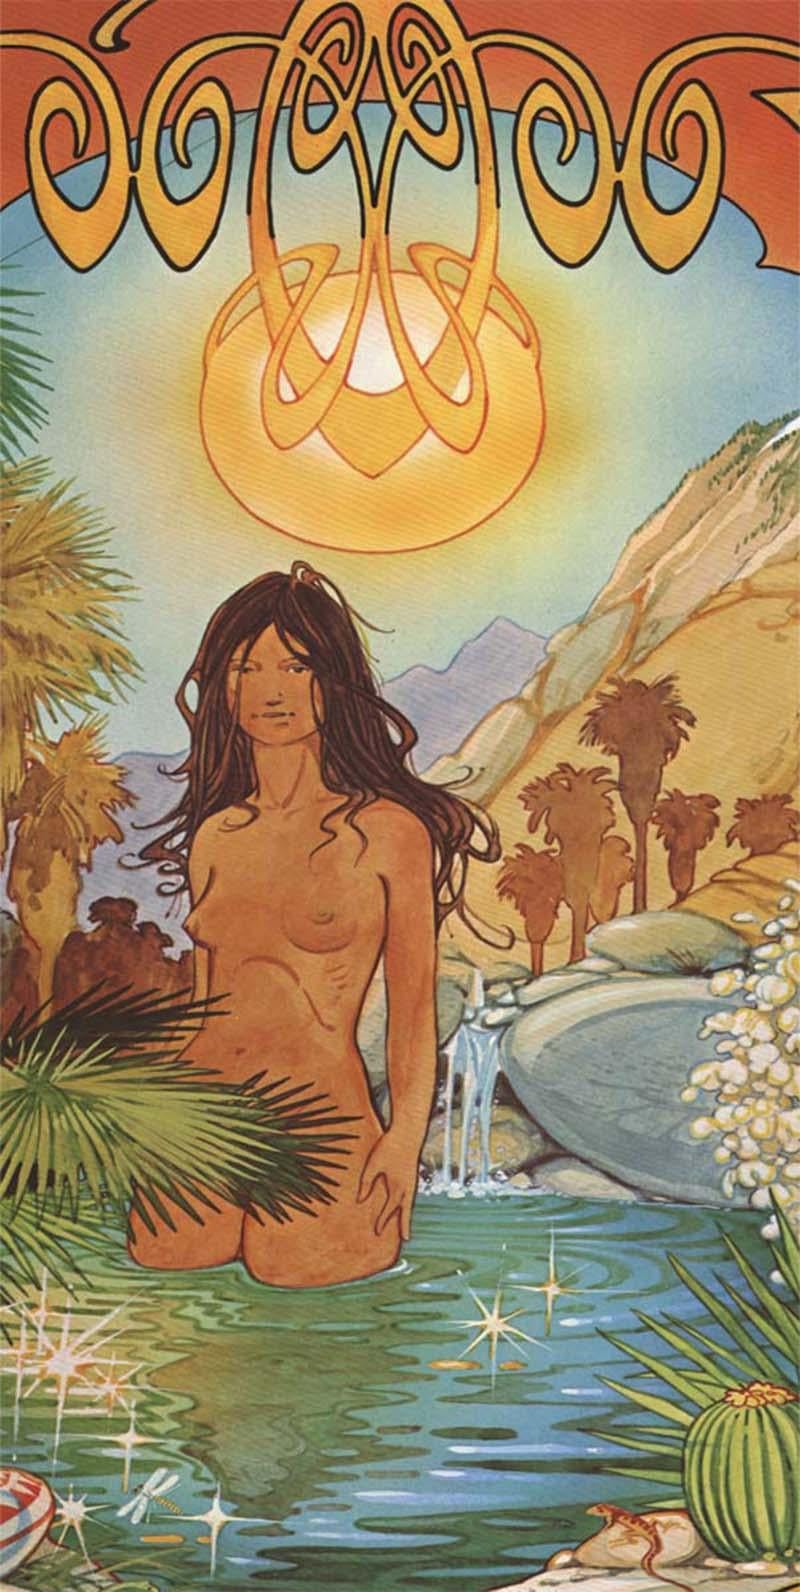 Original Palm Springs Desert Oasis psychedelic vintage poster - Print by Bill Ogden